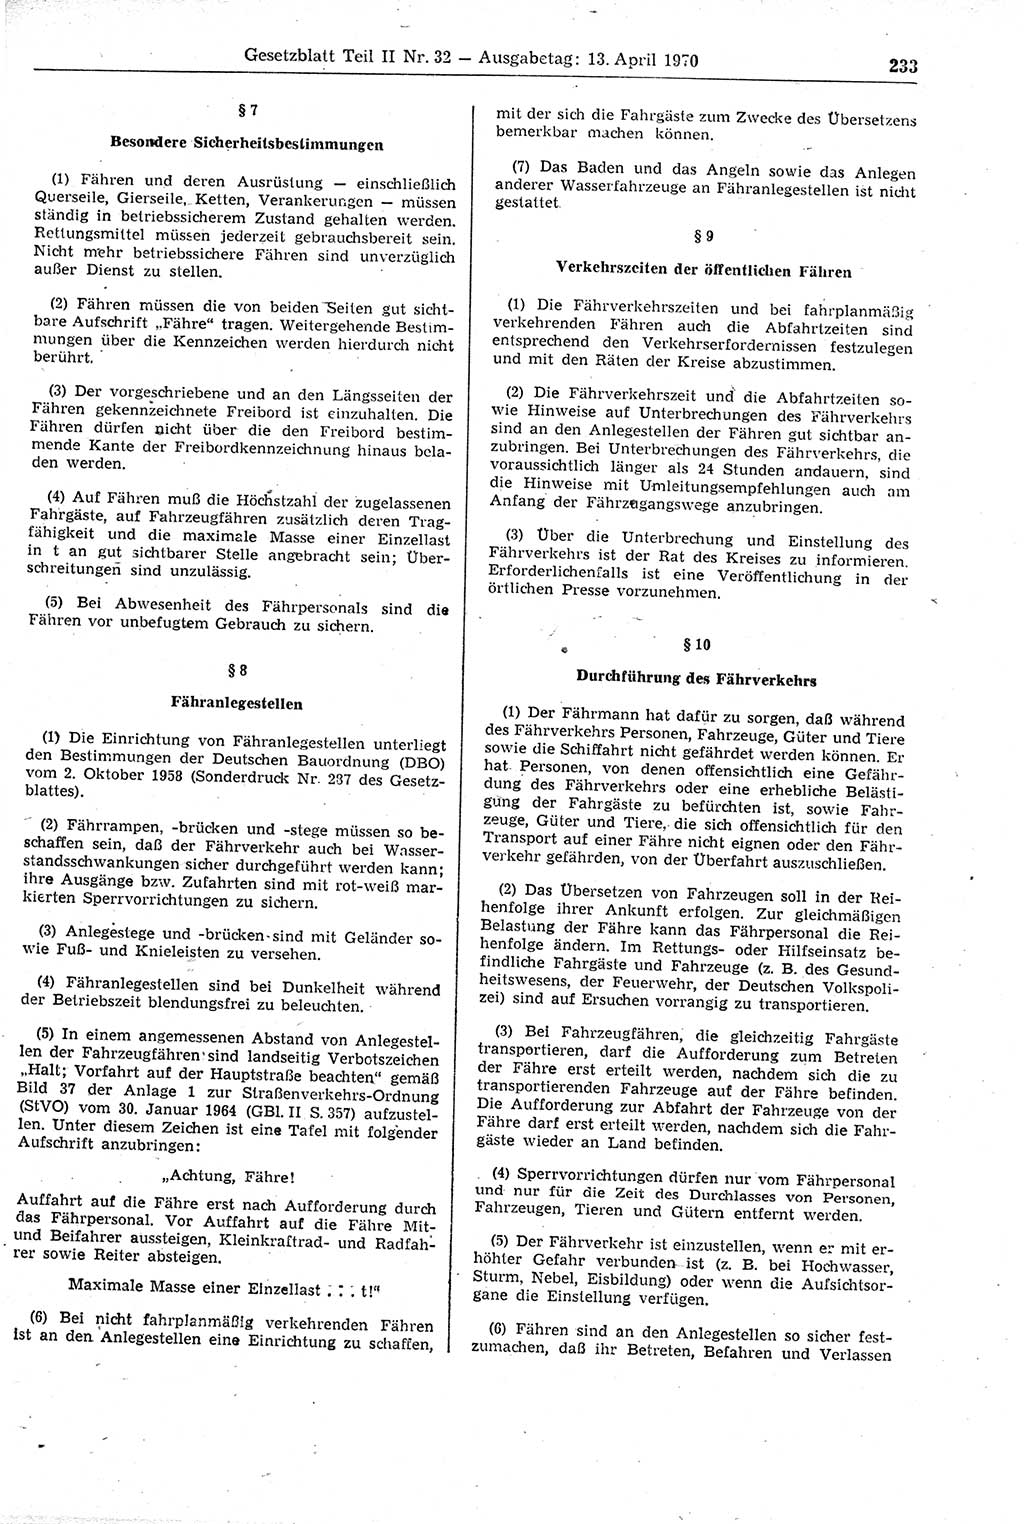 Gesetzblatt (GBl.) der Deutschen Demokratischen Republik (DDR) Teil ⅠⅠ 1970, Seite 233 (GBl. DDR ⅠⅠ 1970, S. 233)